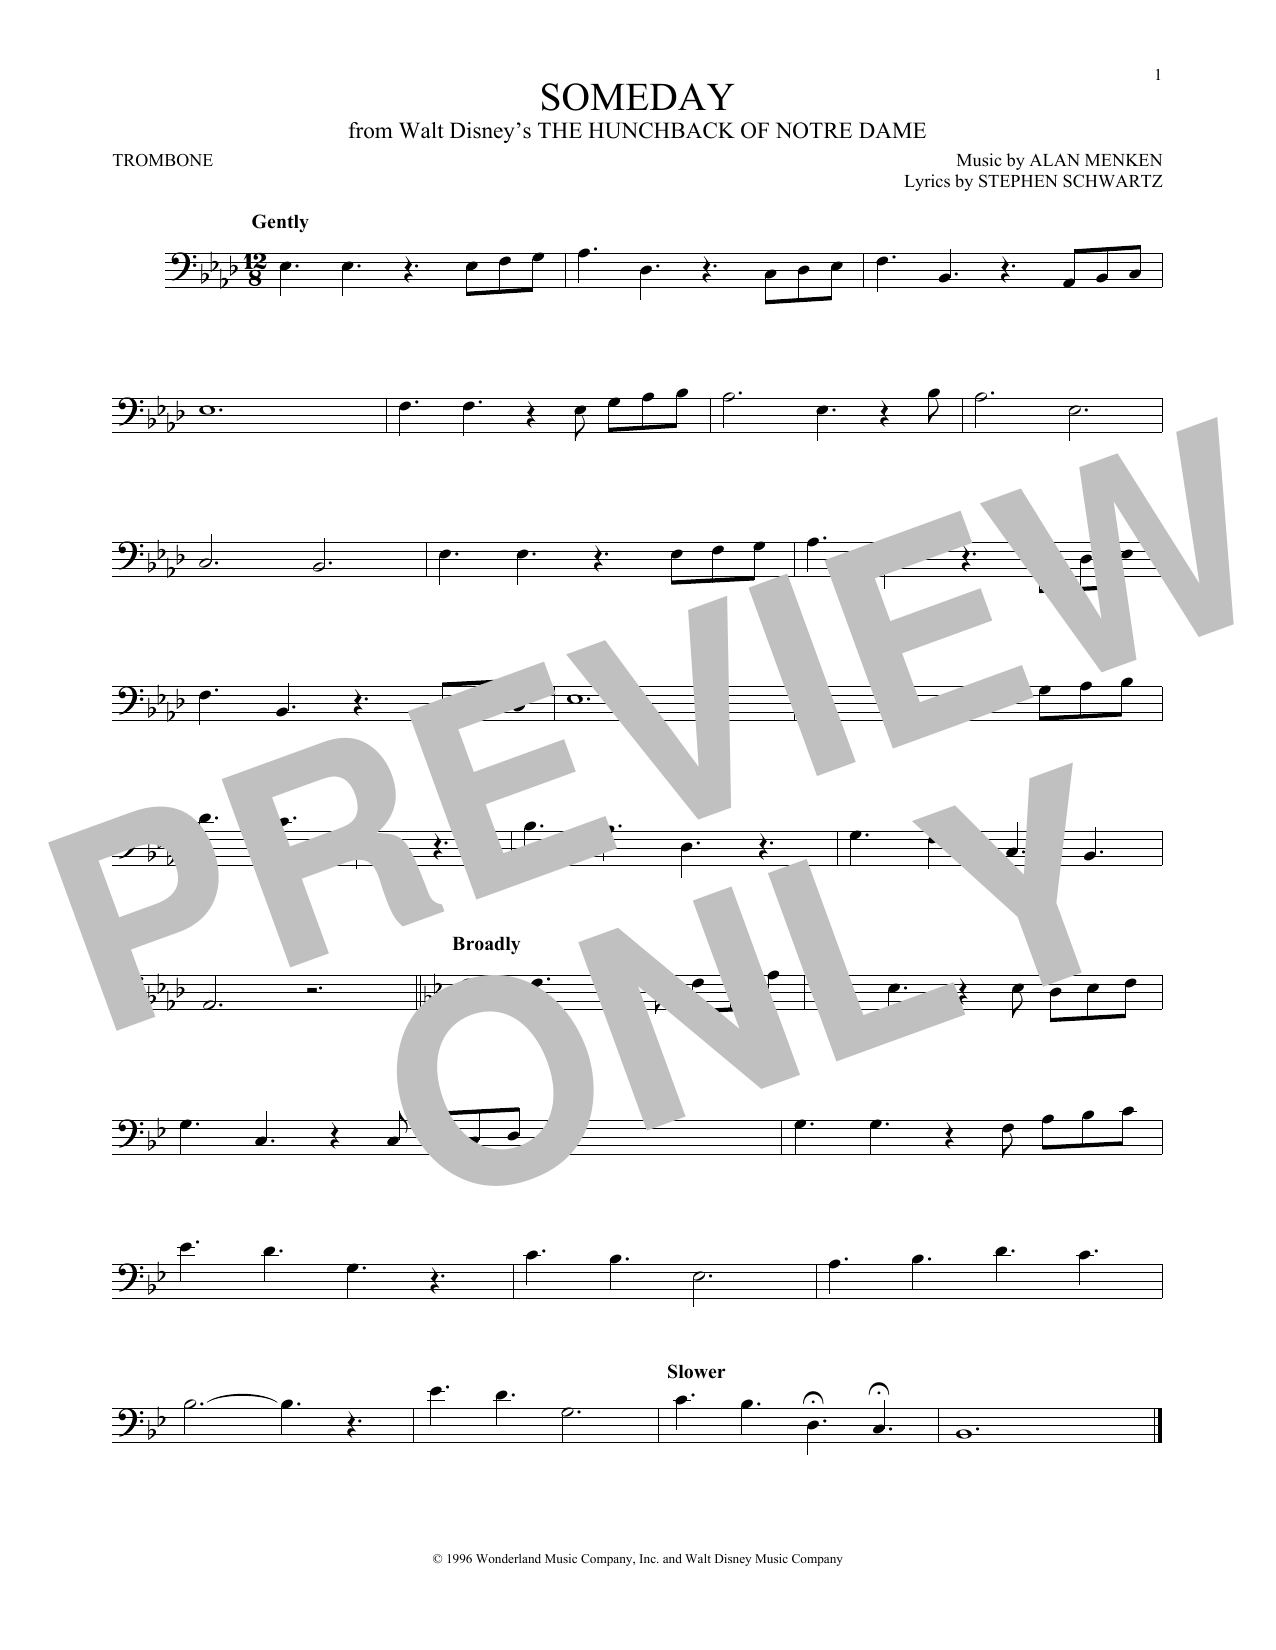 Alan Menken Someday (Esmeralda's Prayer) Sheet Music Notes & Chords for Trombone - Download or Print PDF